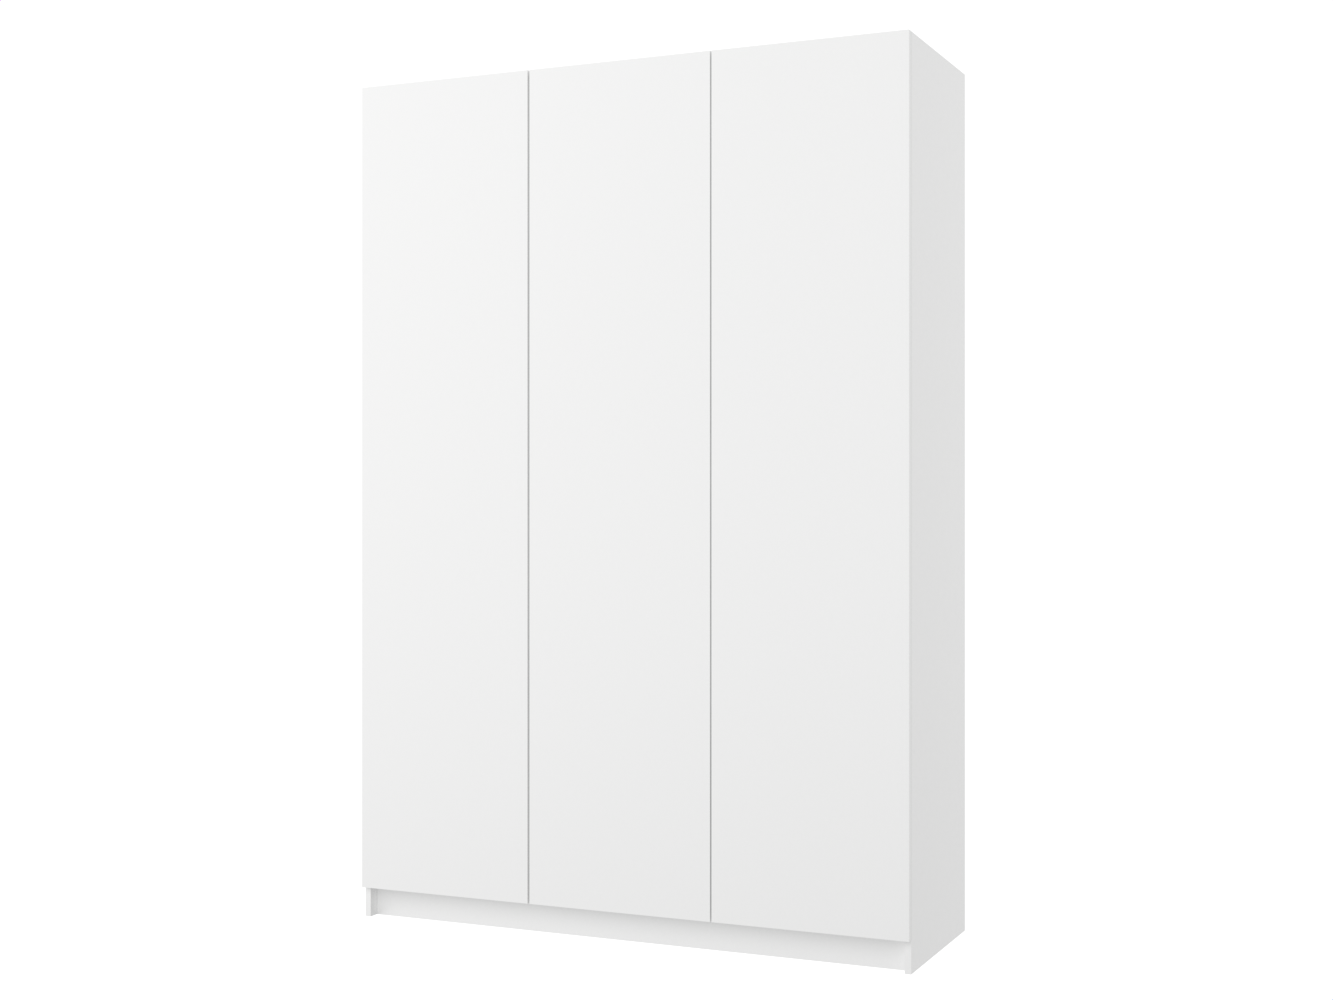 Распашной шкаф Пакс Фардал 133 white ИКЕА (IKEA) изображение товара